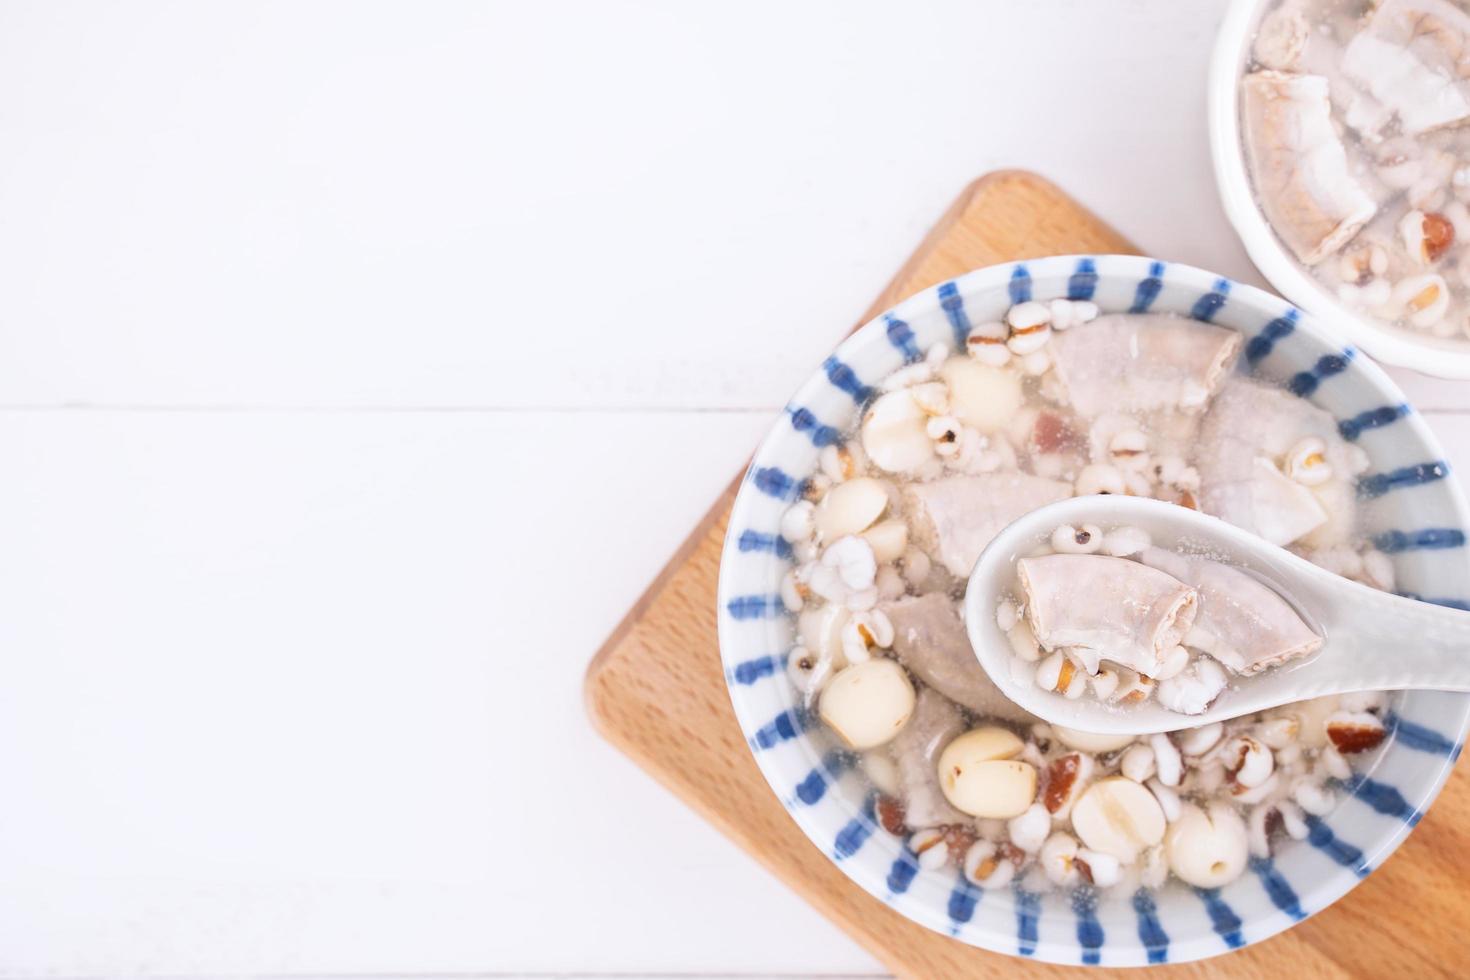 sabrosa sopa con sabor a hierbas de cuatro tónicos, comida tradicional taiwanesa con hierbas, intestinos de cerdo en una mesa de madera blanca, primer plano, puesta plana, vista superior. foto